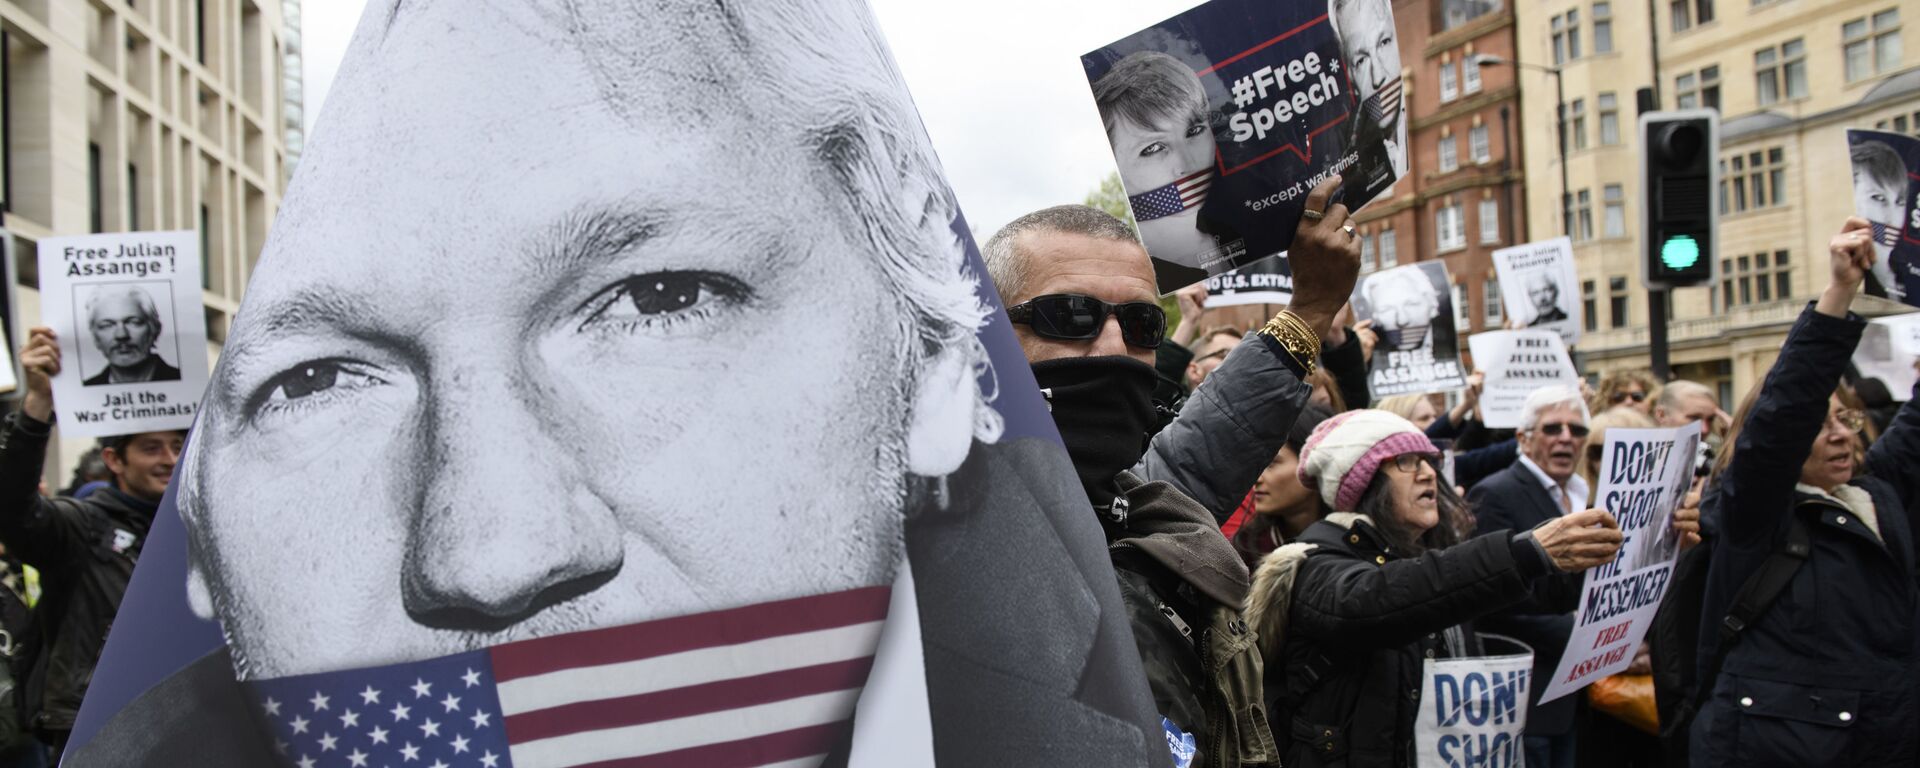 Присталице оснивача Викиликса Џулијана Асанжа протестују против саслушања о изручењу, у Лондону, Велика Британија - Sputnik Србија, 1920, 05.01.2021